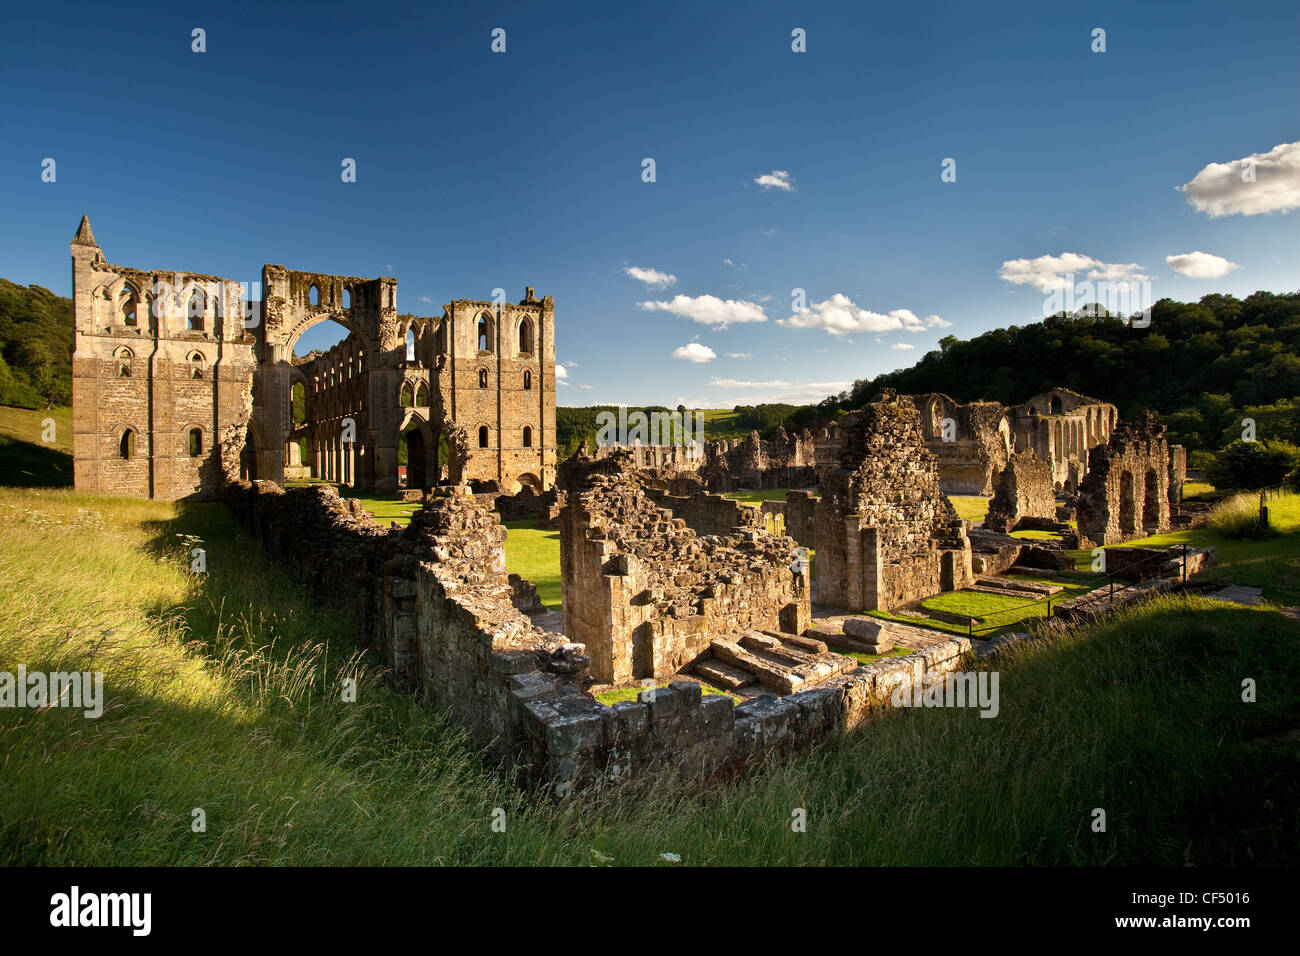 Las ruinas de Rievaulx Abbey, una abadía cisterciense fundada en 1132 y disuelta por Enrique VIII en 1538. Foto de stock